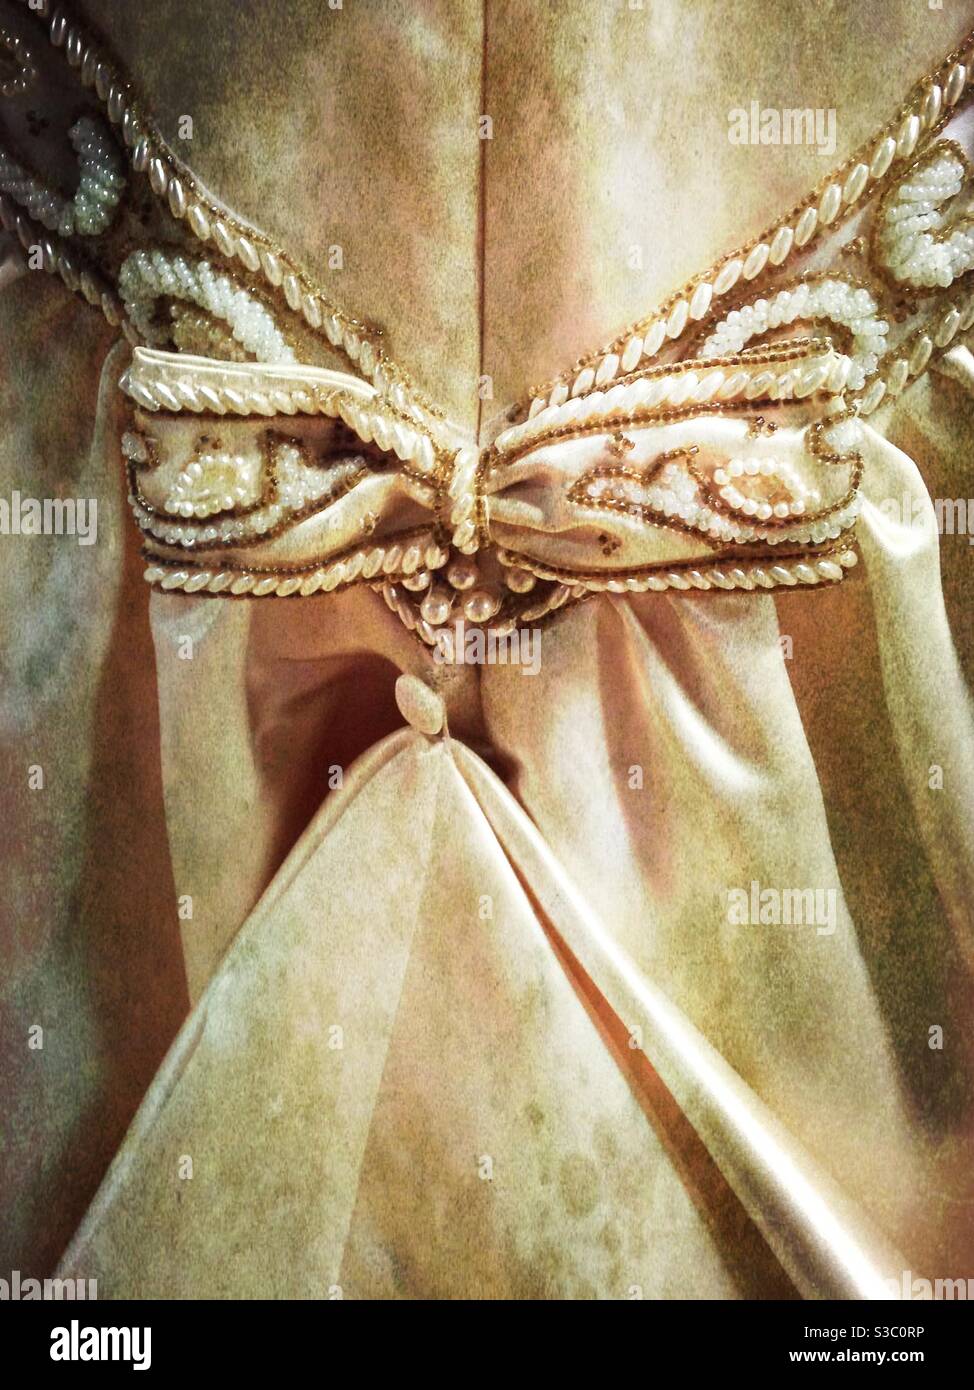 Empiècement antique de noeud sur la robe de mariage Banque D'Images